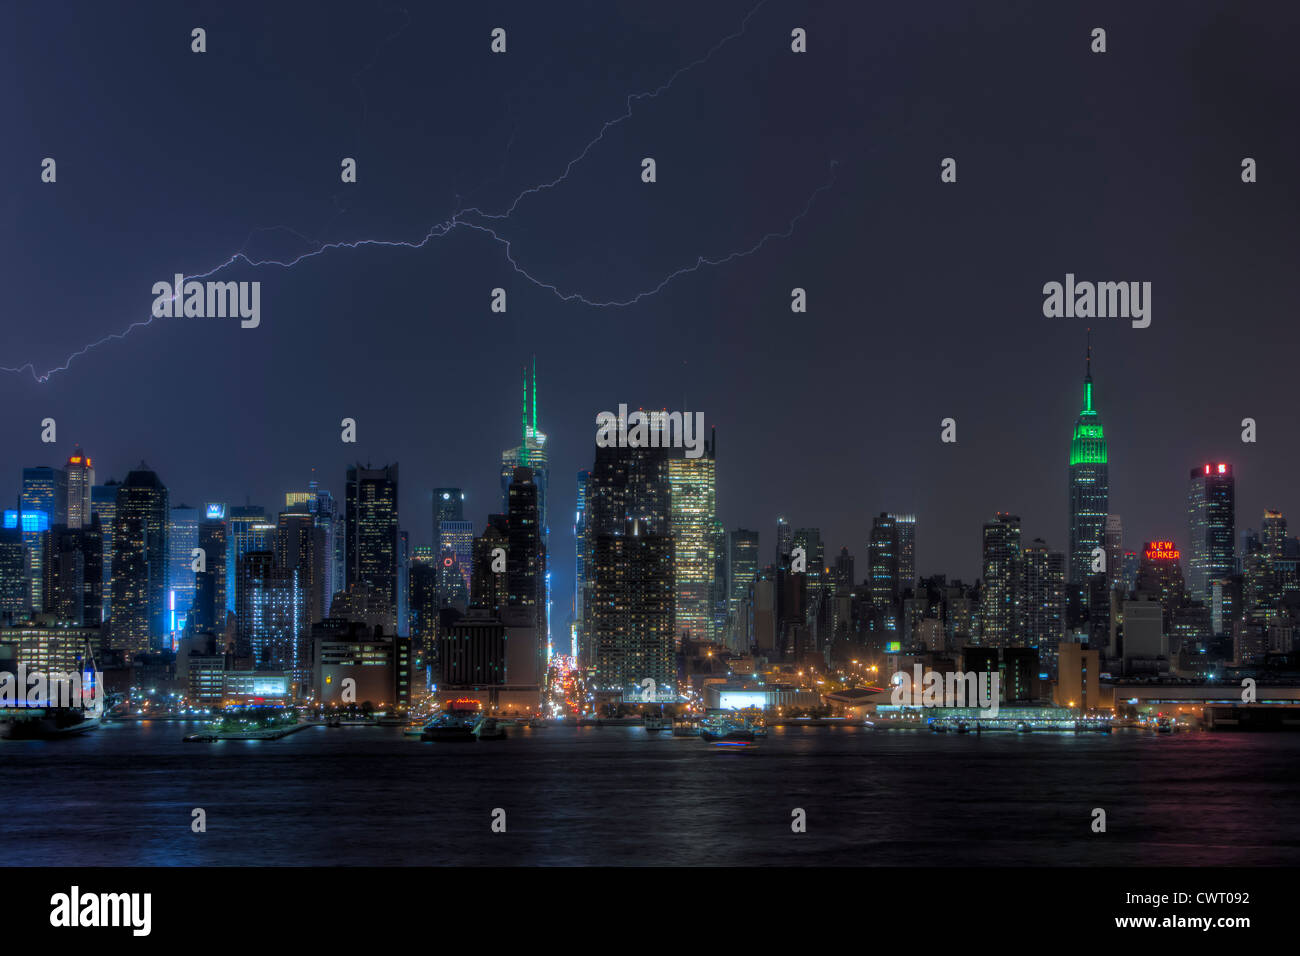 Ein Forked Blitz erhellt den Nachthimmel hinter der Skyline von Midtown während eines Gewitters Sommer in New York City. Stockfoto